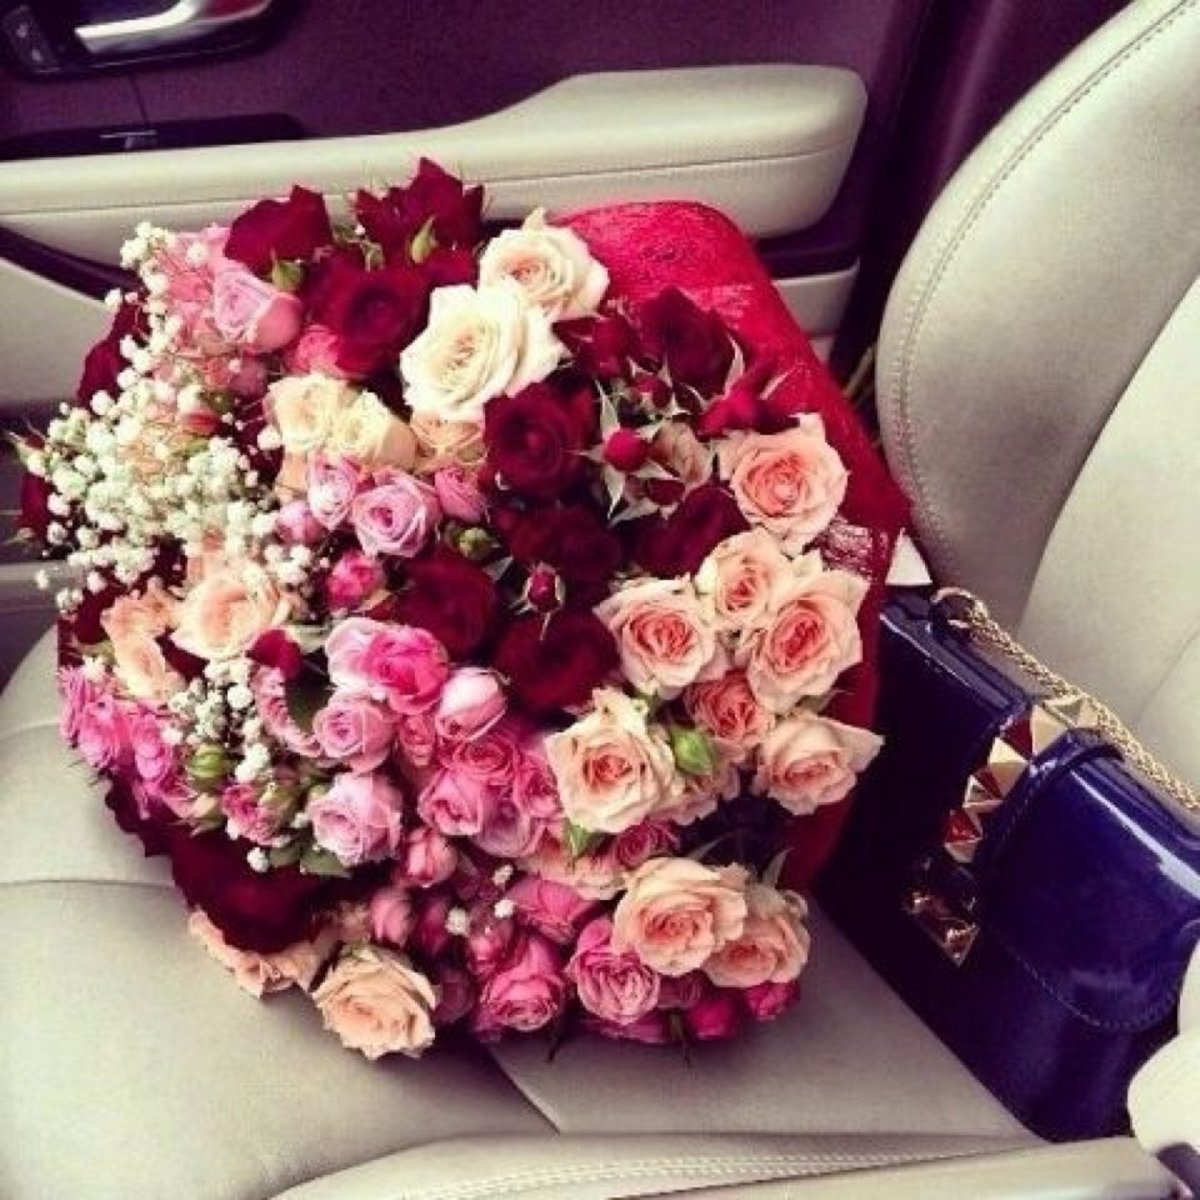 Фото цветов в машине в салоне